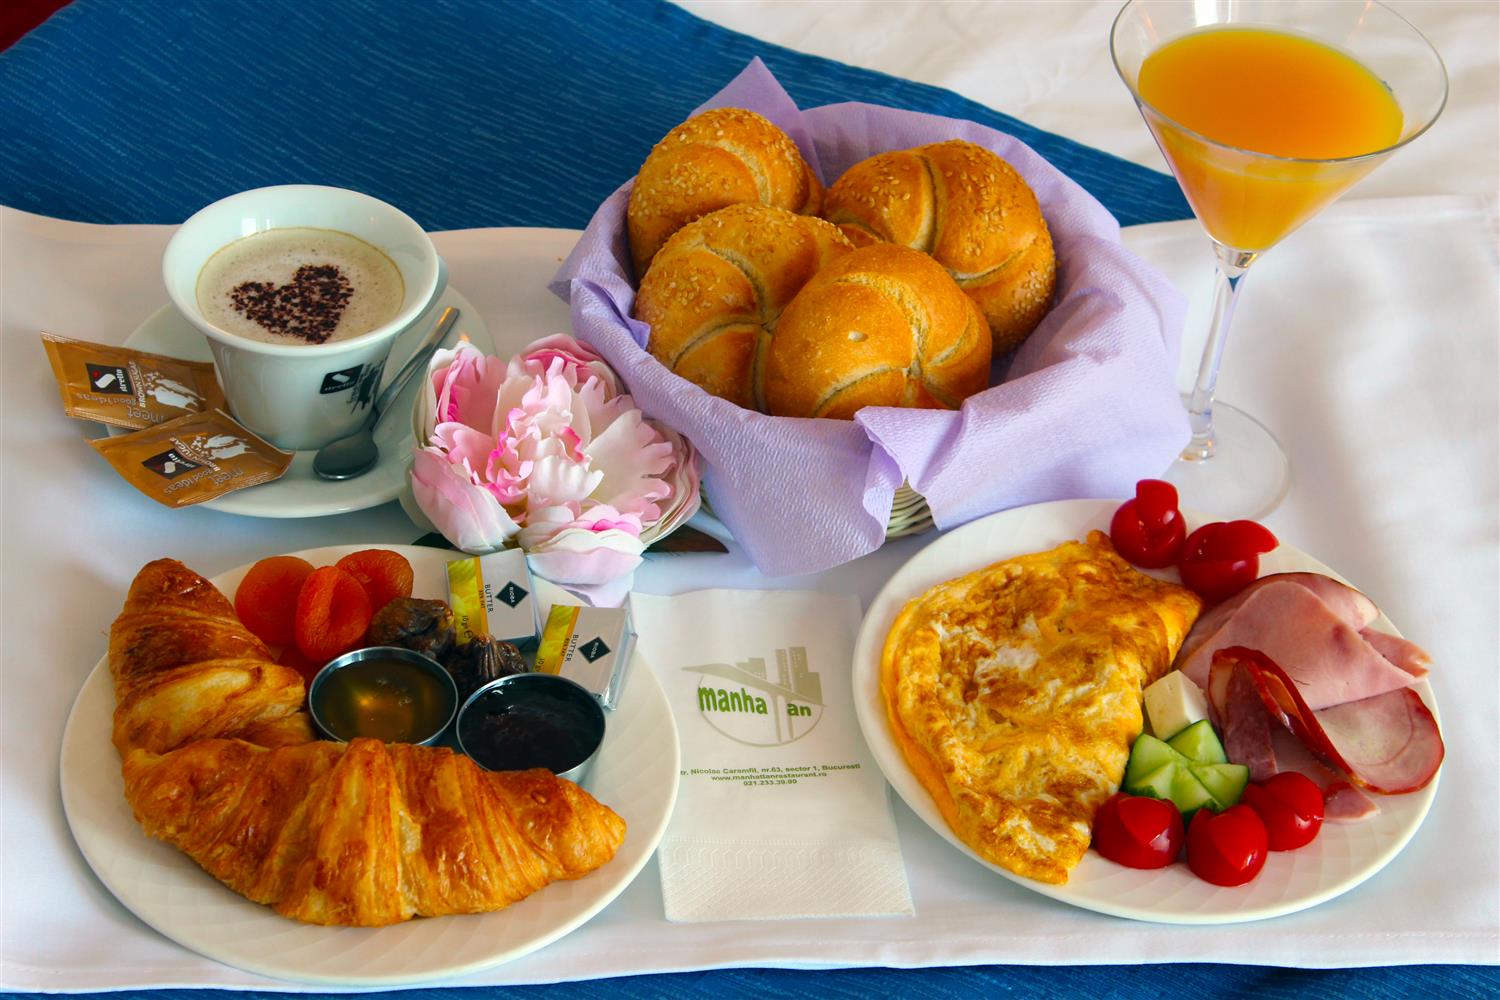 континентальный завтрак в отеле что это такое